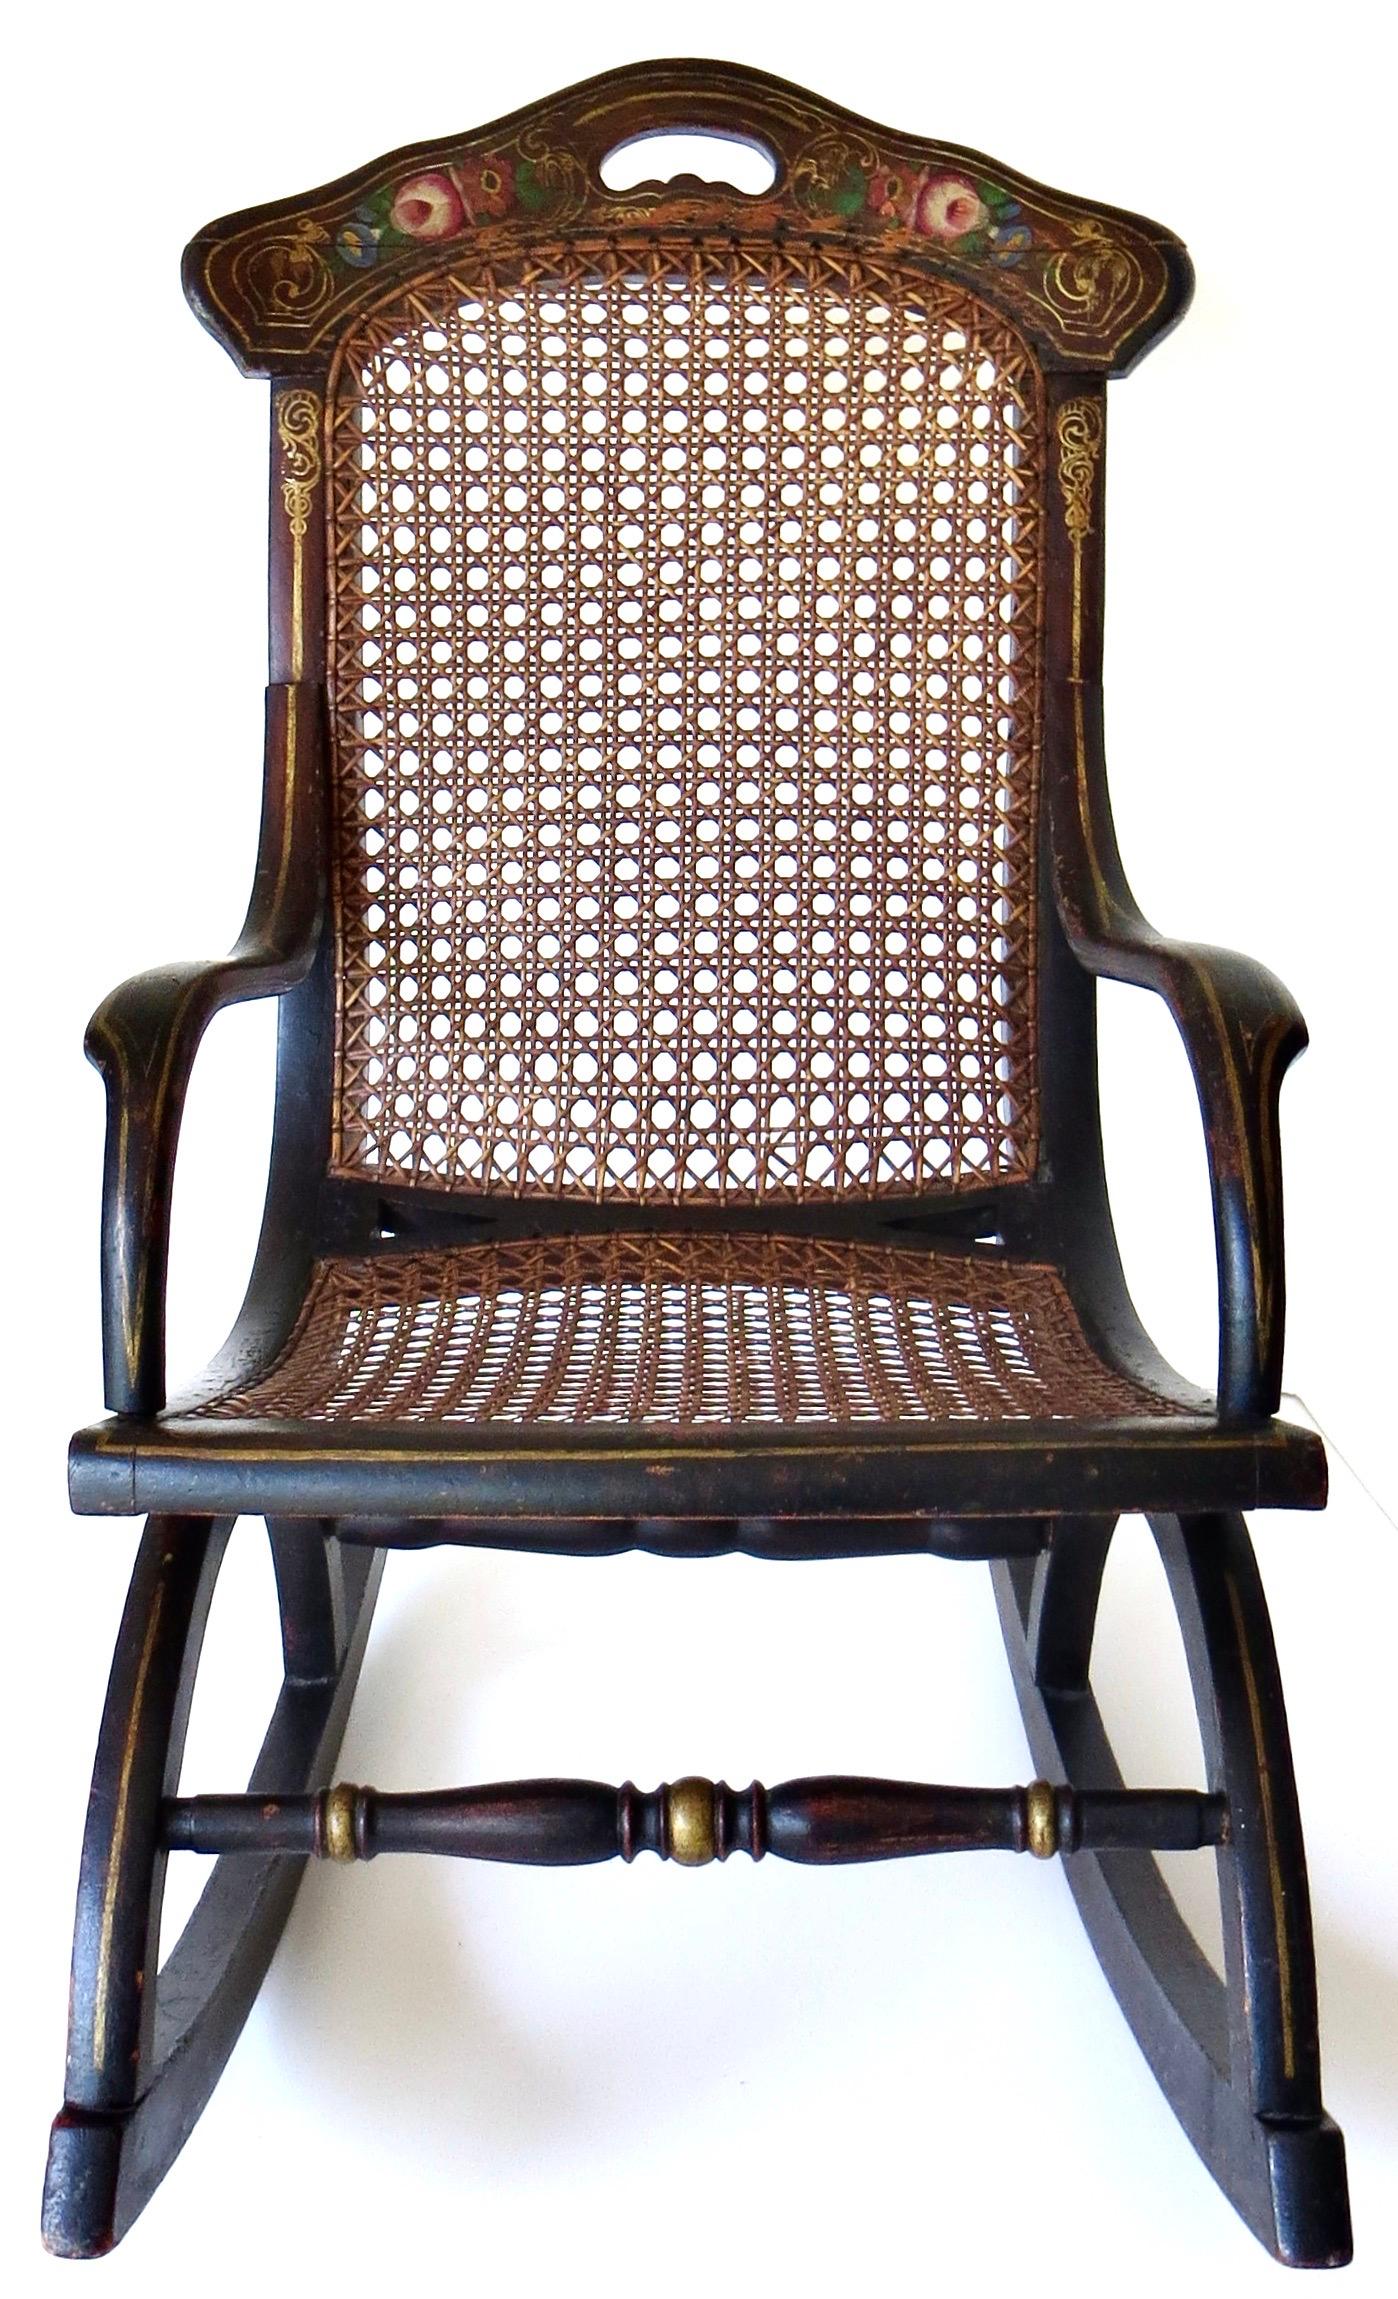 Charmante chaise à bascule d'enfant en bois dur datant du milieu de l'époque victorienne, ébonisée avec un pochoir floral polychrome peint à la main sur la traverse supérieure du dossier en bleu, vert et rouge ; pochoir de lignes dorées et de fleurs